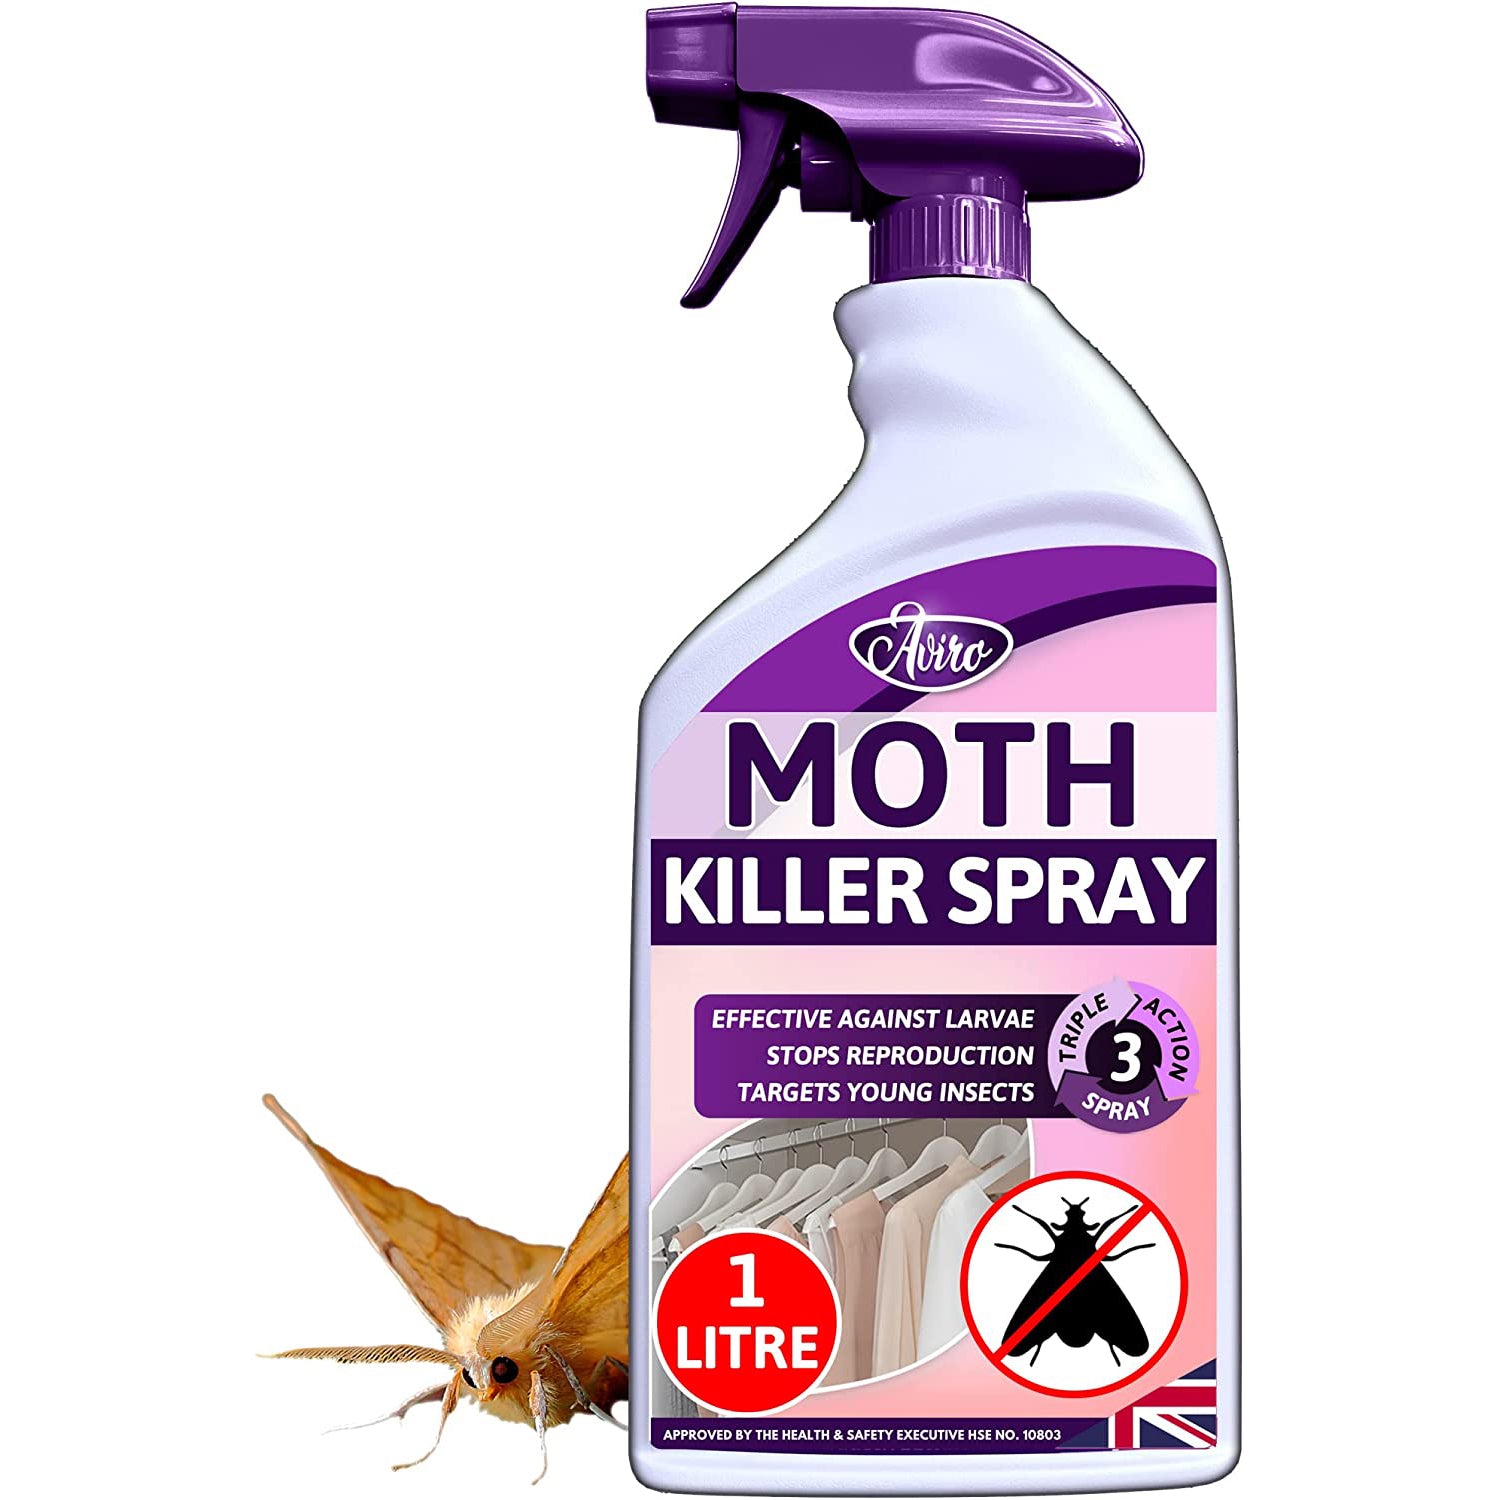 Natural Clothes Moth Killer Spray